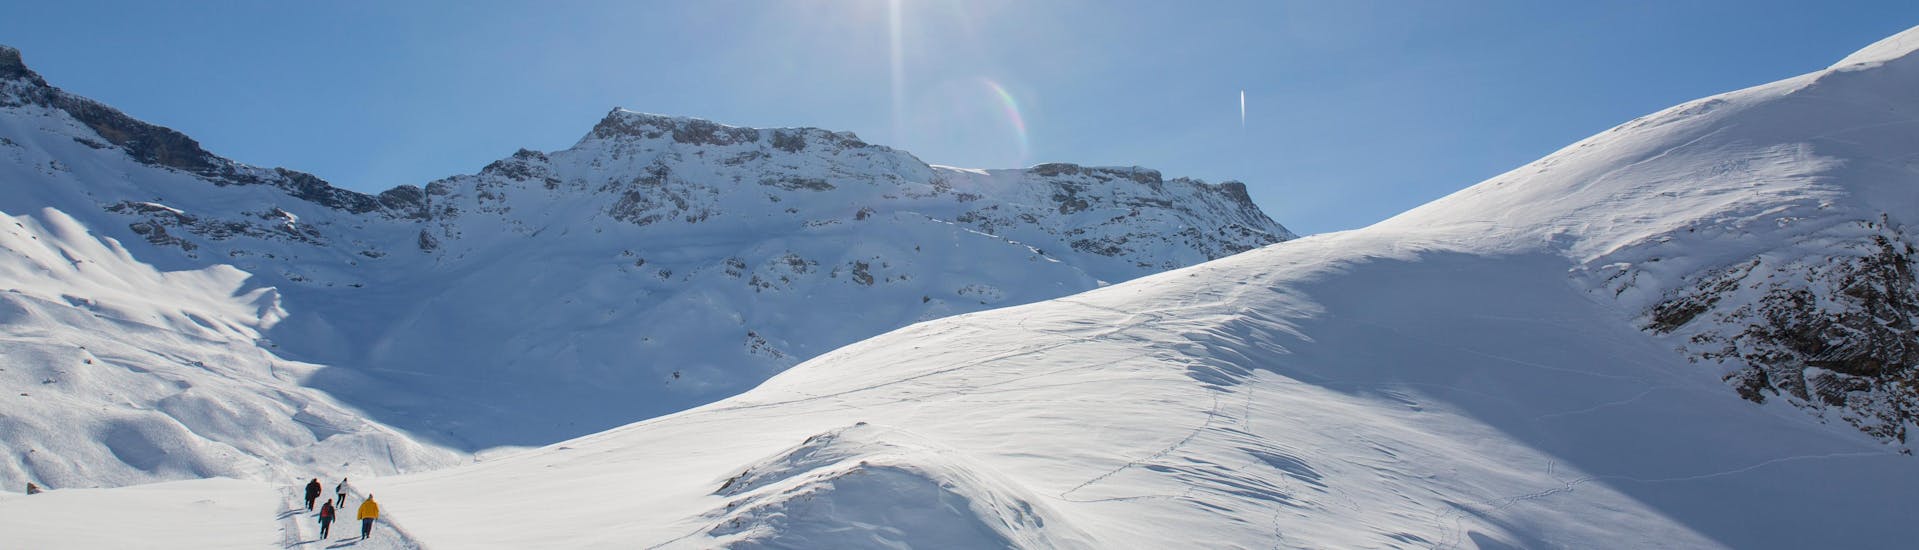 Ausblick auf die sonnige Berglandschaft beim Skifahren lernen mit den Skischulen in Adelboden.